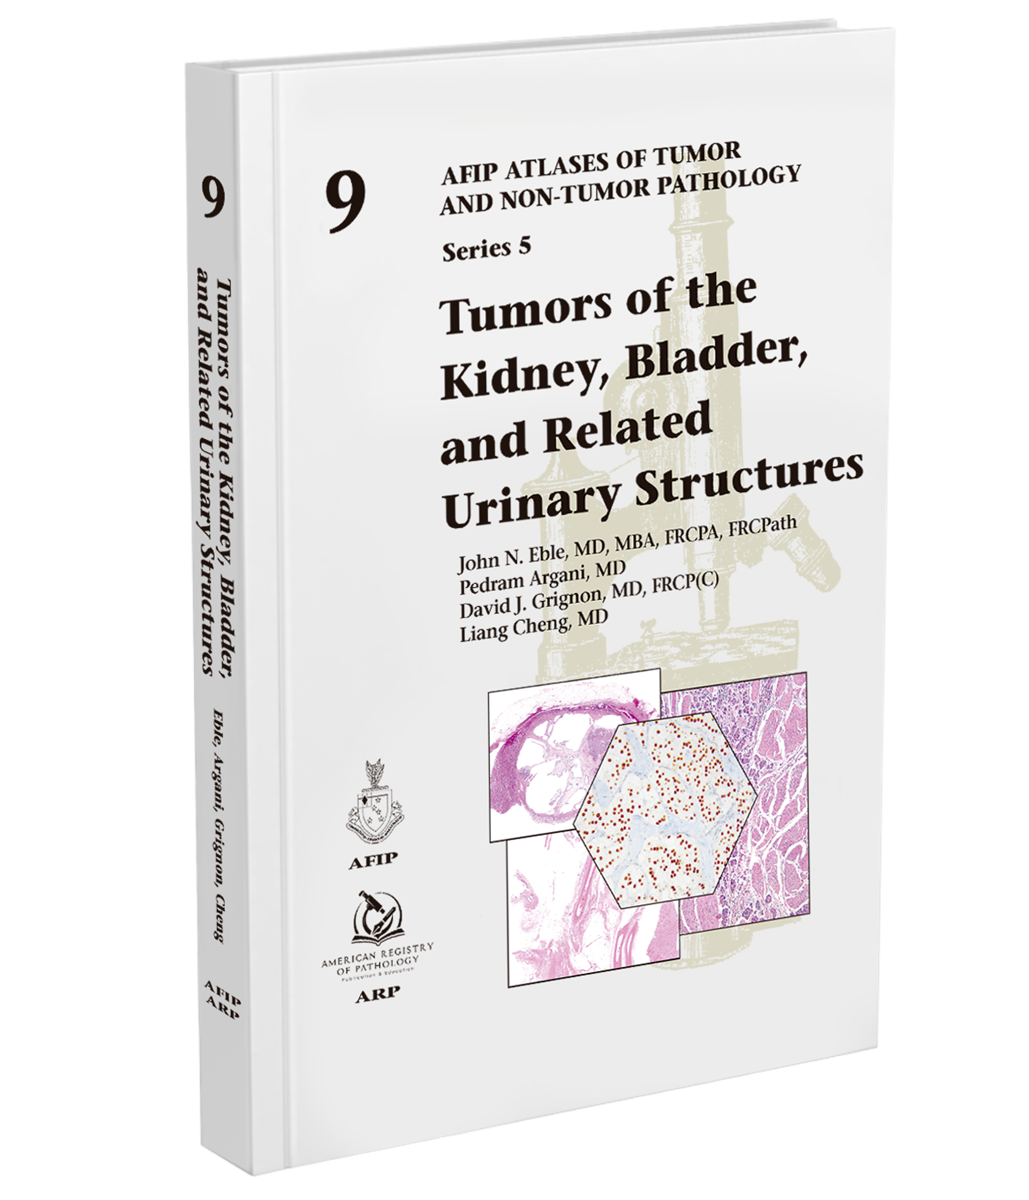 Atlases of Tumor & Non-Tumor Pathology, 5th Series,Fascicle 9